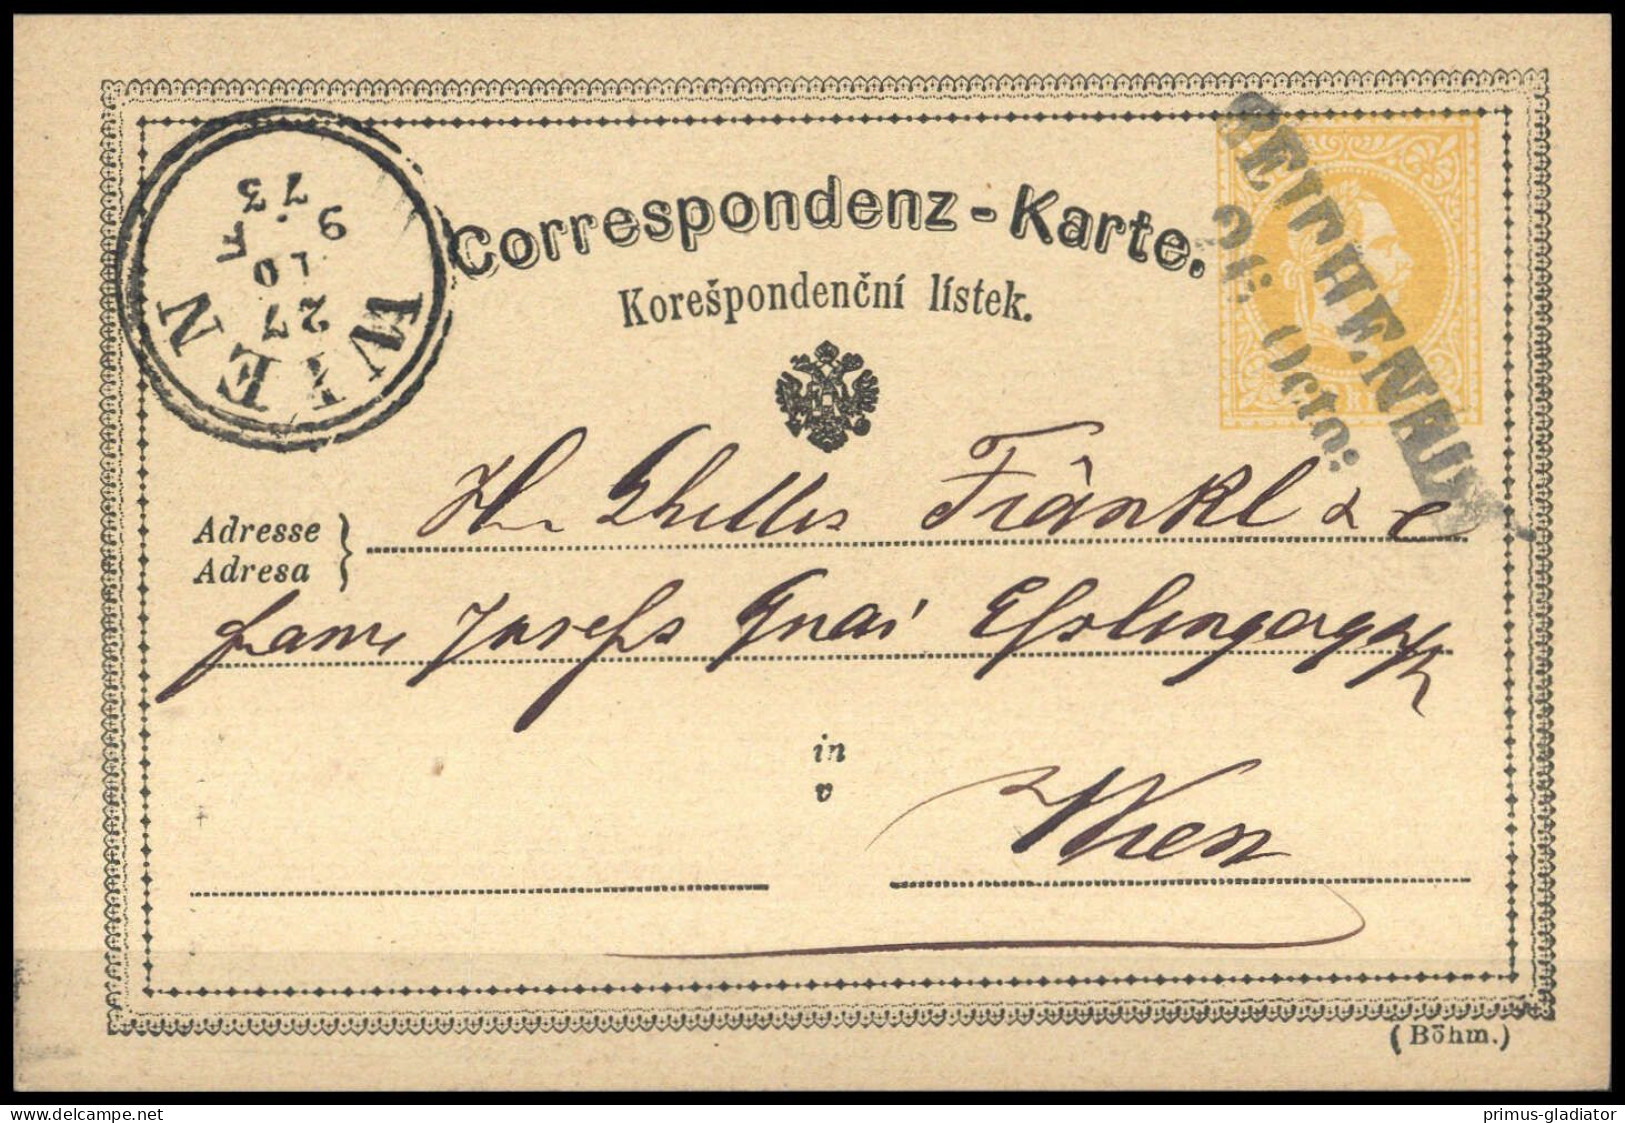 Österreich, P 18, Brief - Machine Postmarks